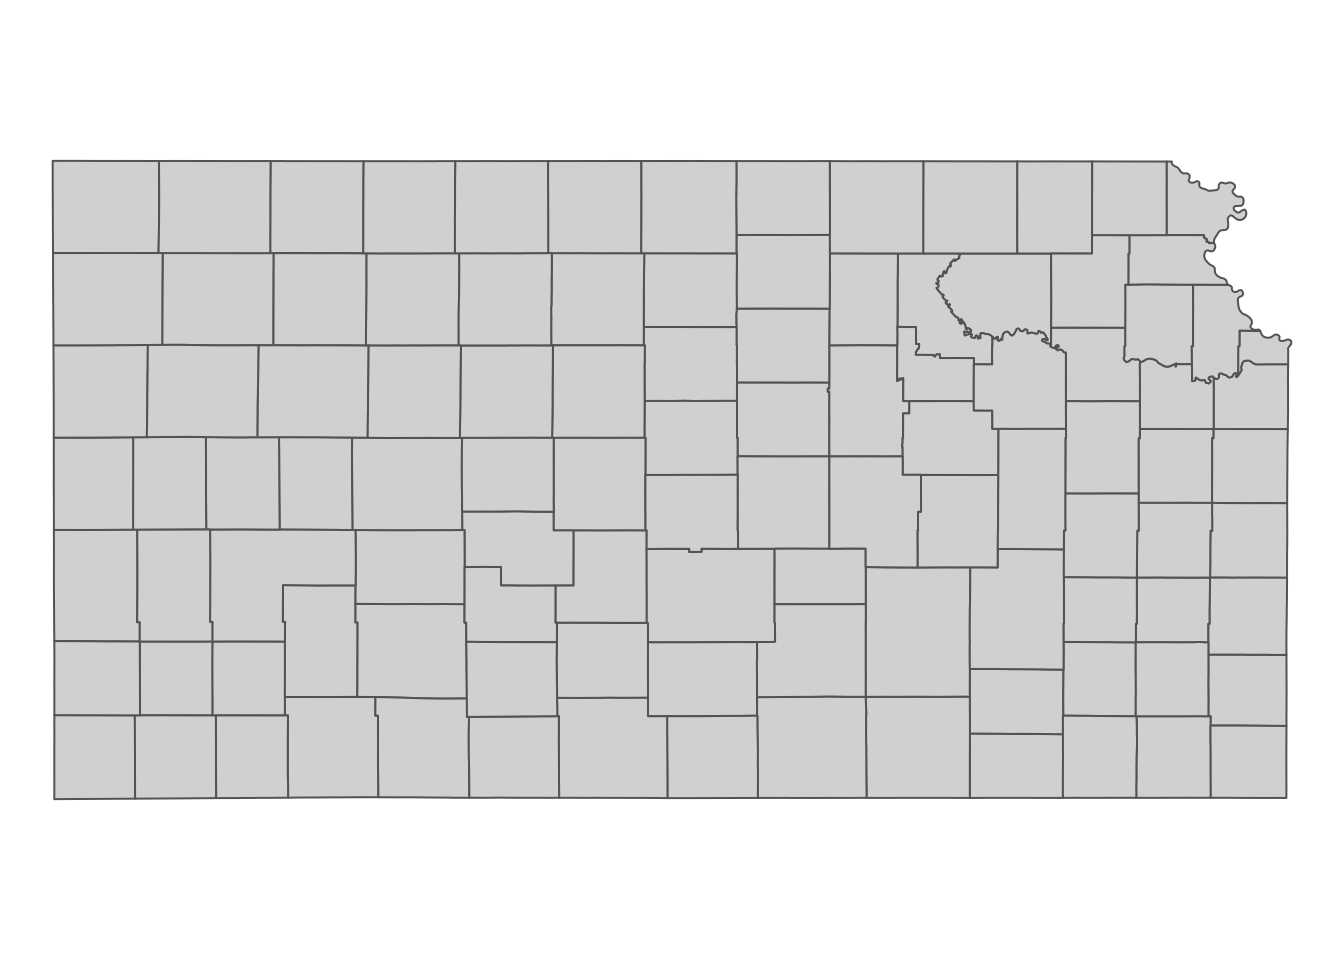 Kansas county boundaries